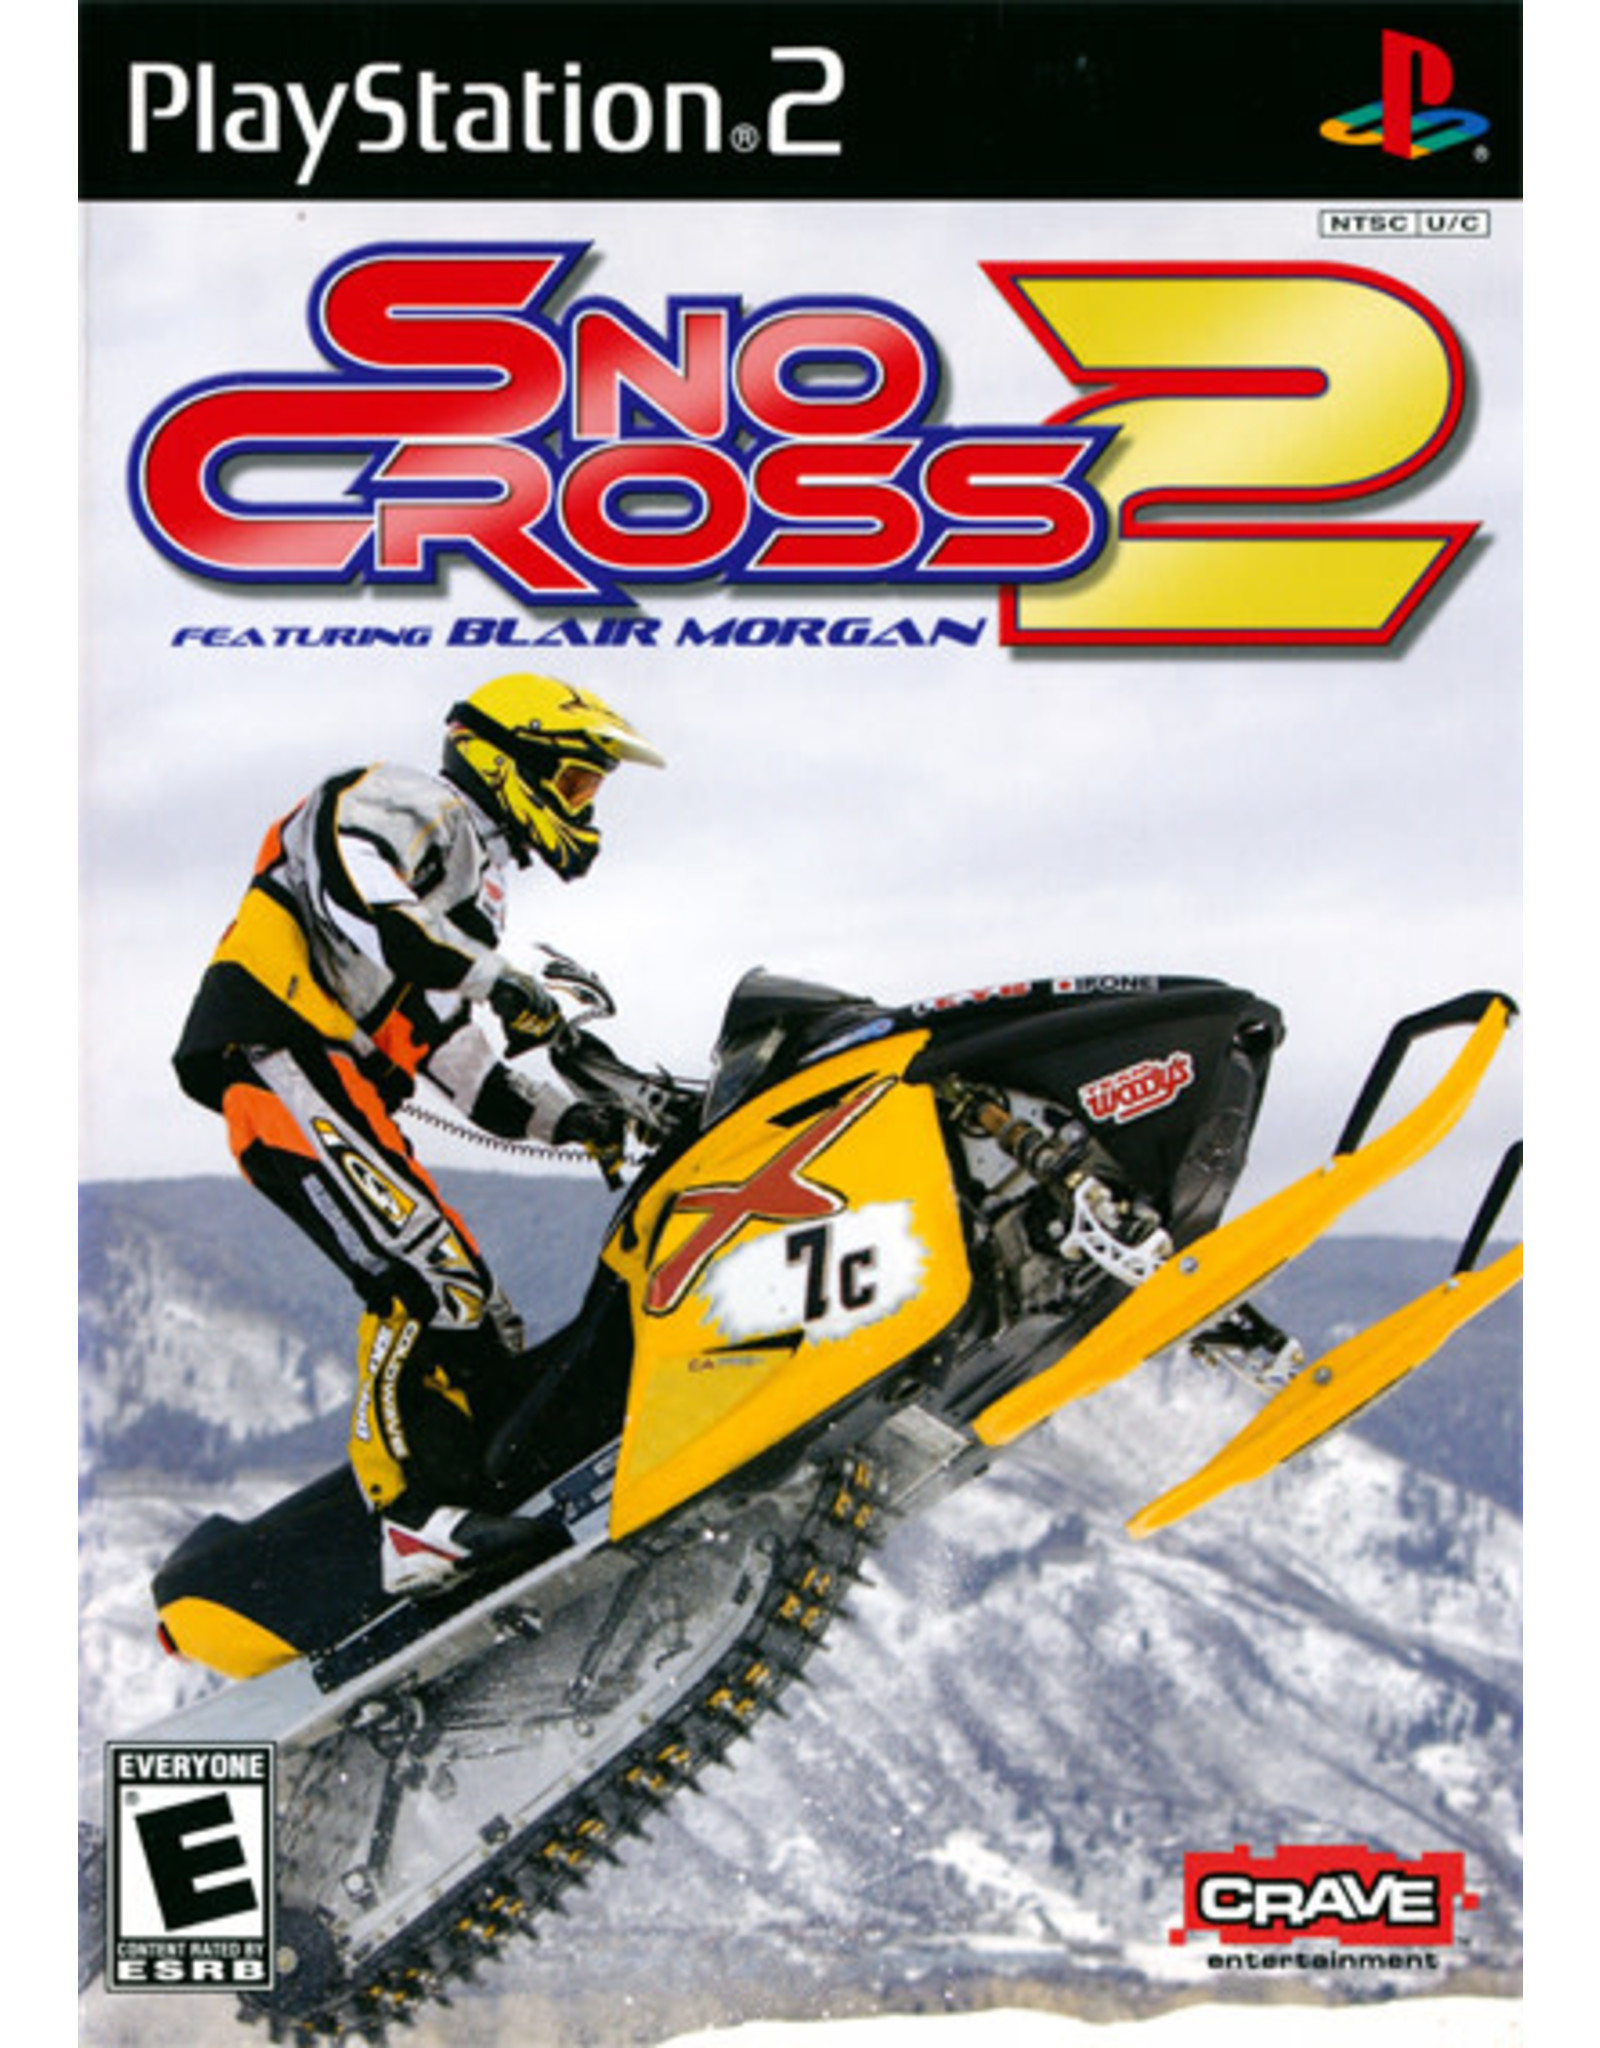 Playstation 2 SnoCross 2 (CiB)